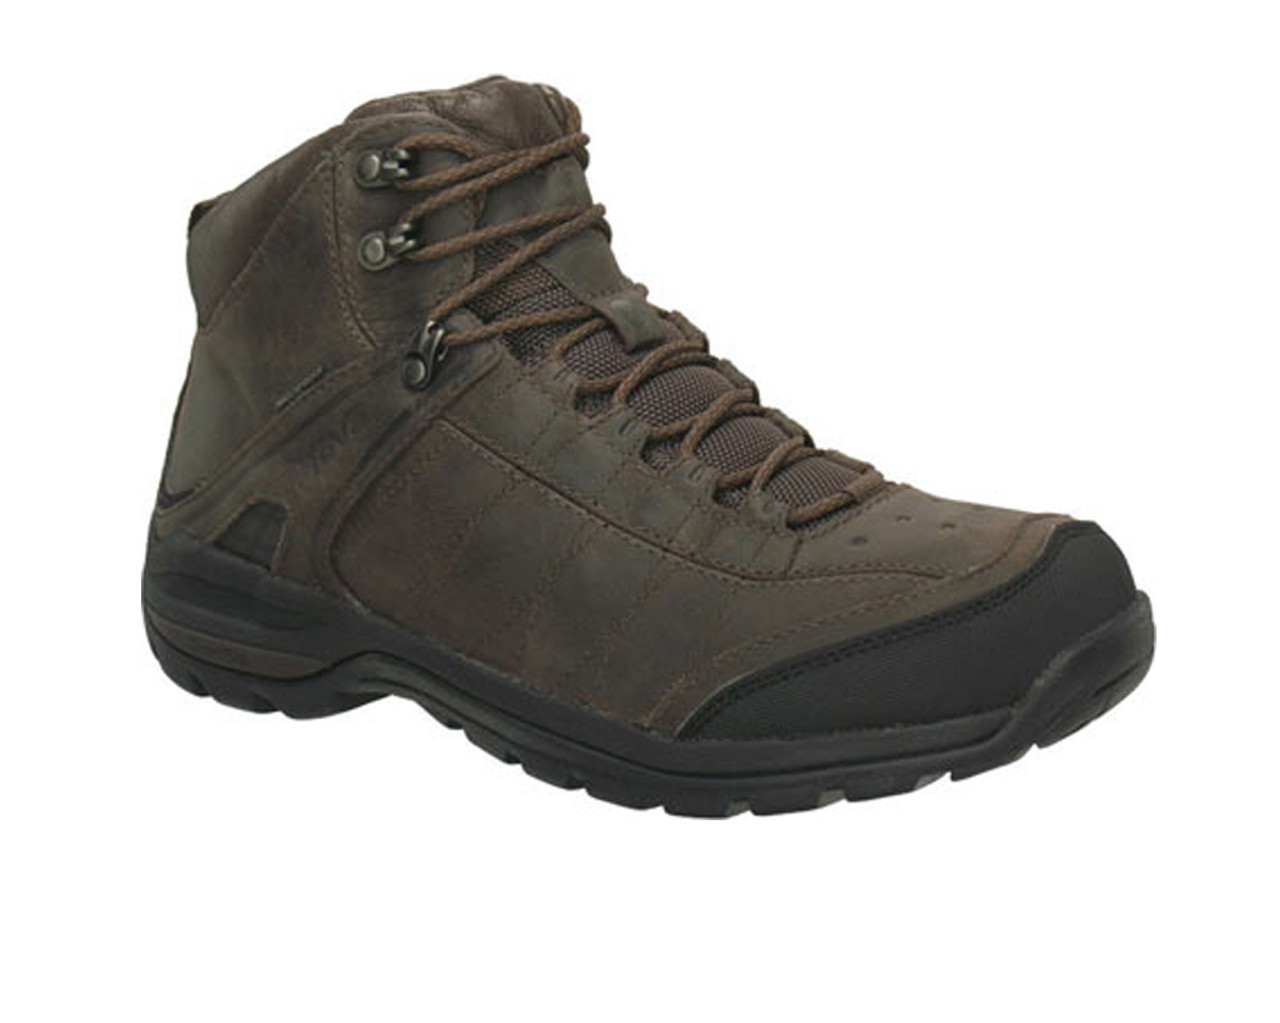 Teva Men's Kimtah Mid WP Leather Boot - Brown | Discount Teva Men's Boots & More - Shoolu.com |